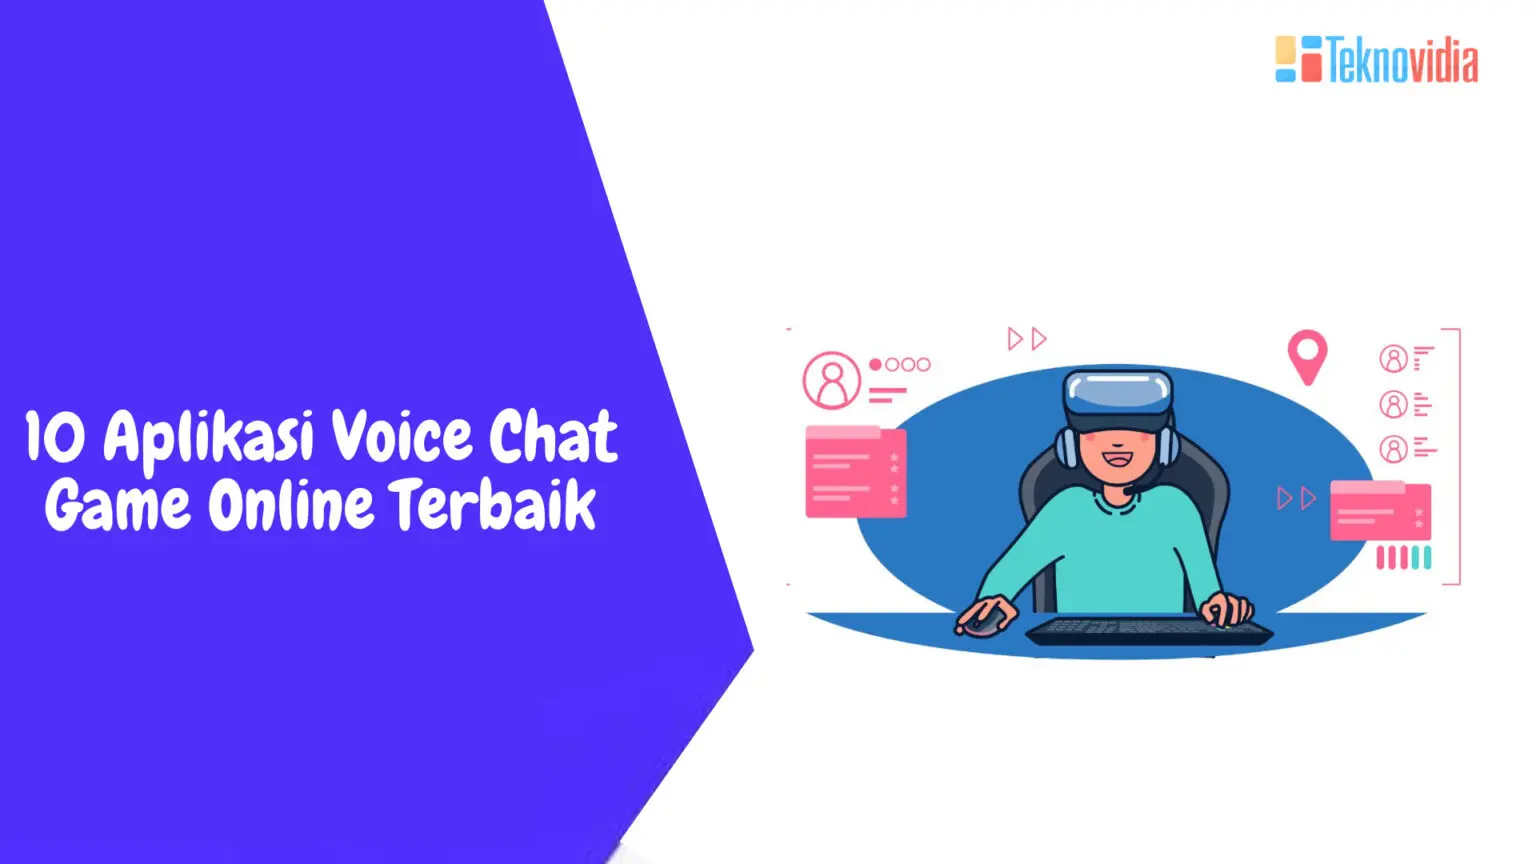 10 Aplikasi Voice Chat Game Online Terbaik